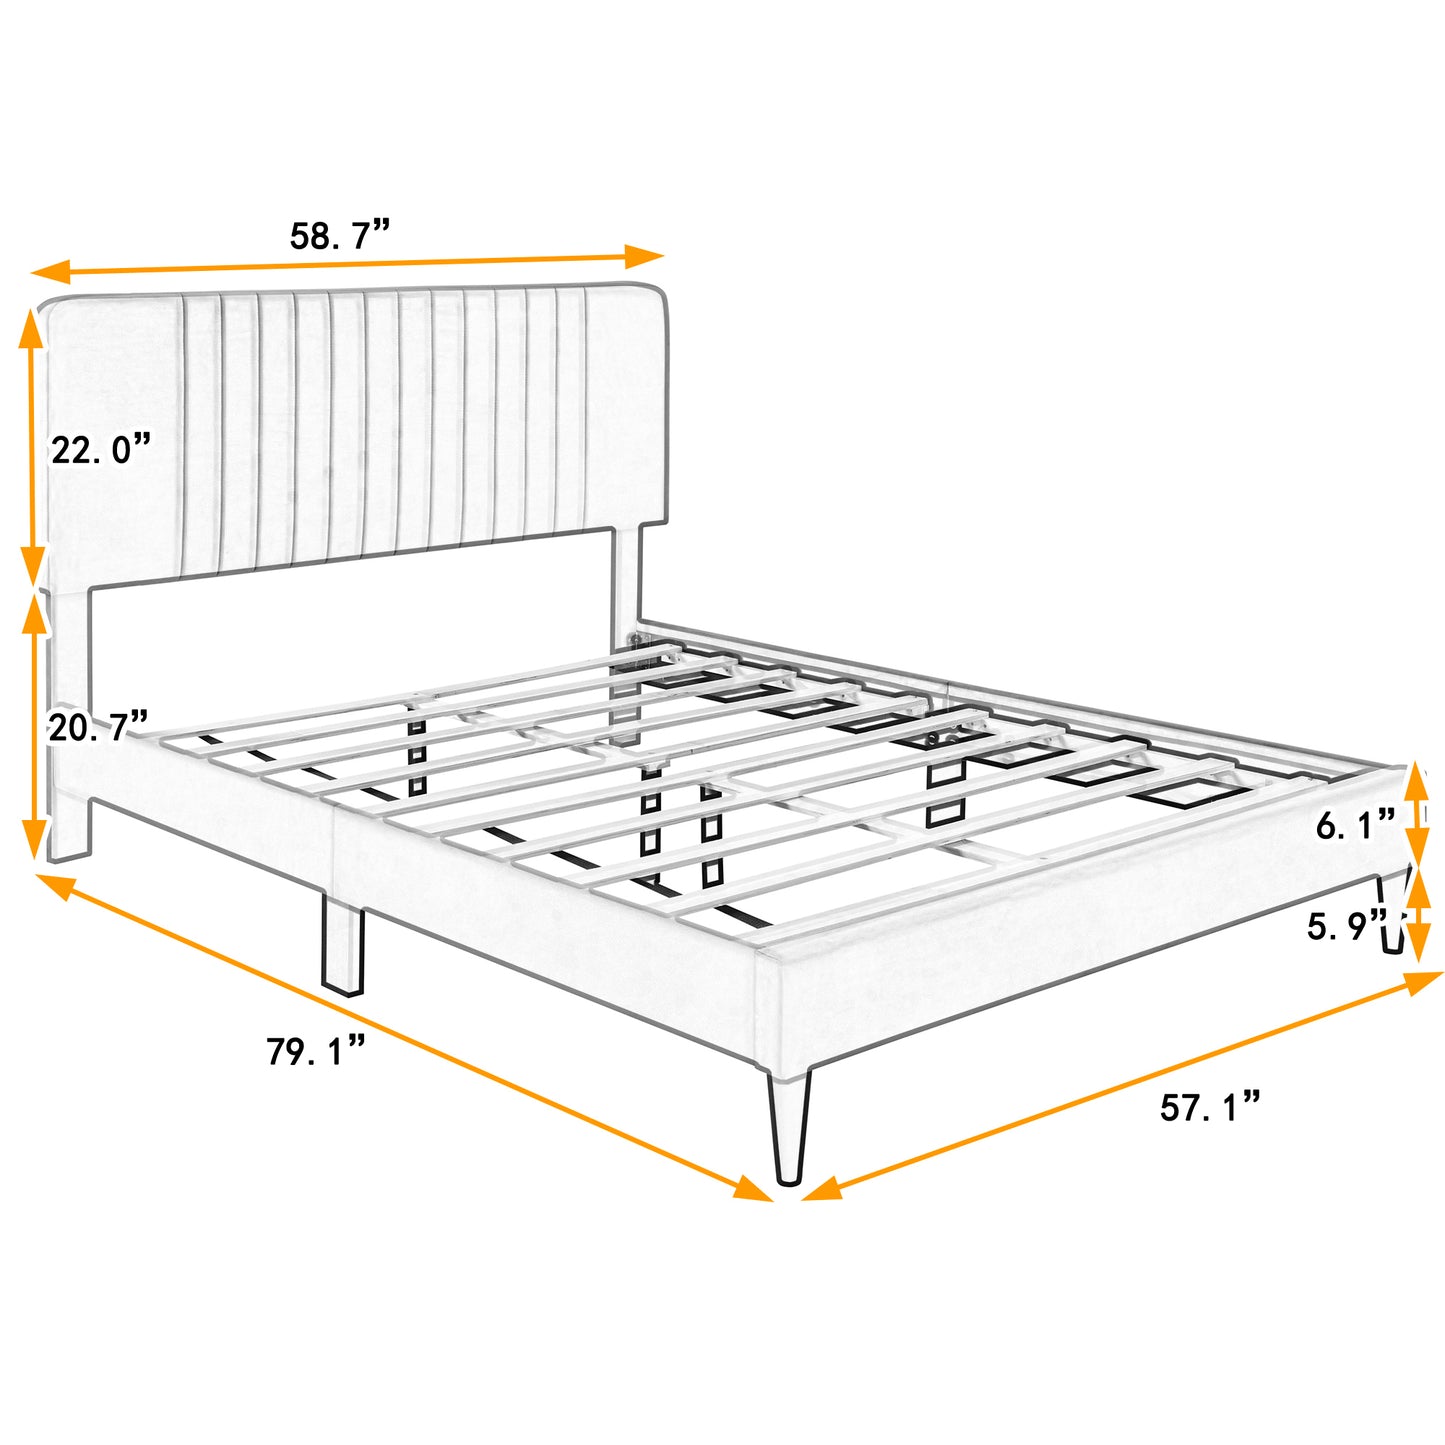 Full Size Upholstered Platform Bed,No Box Spring Needed, Velvet Fabric,Green